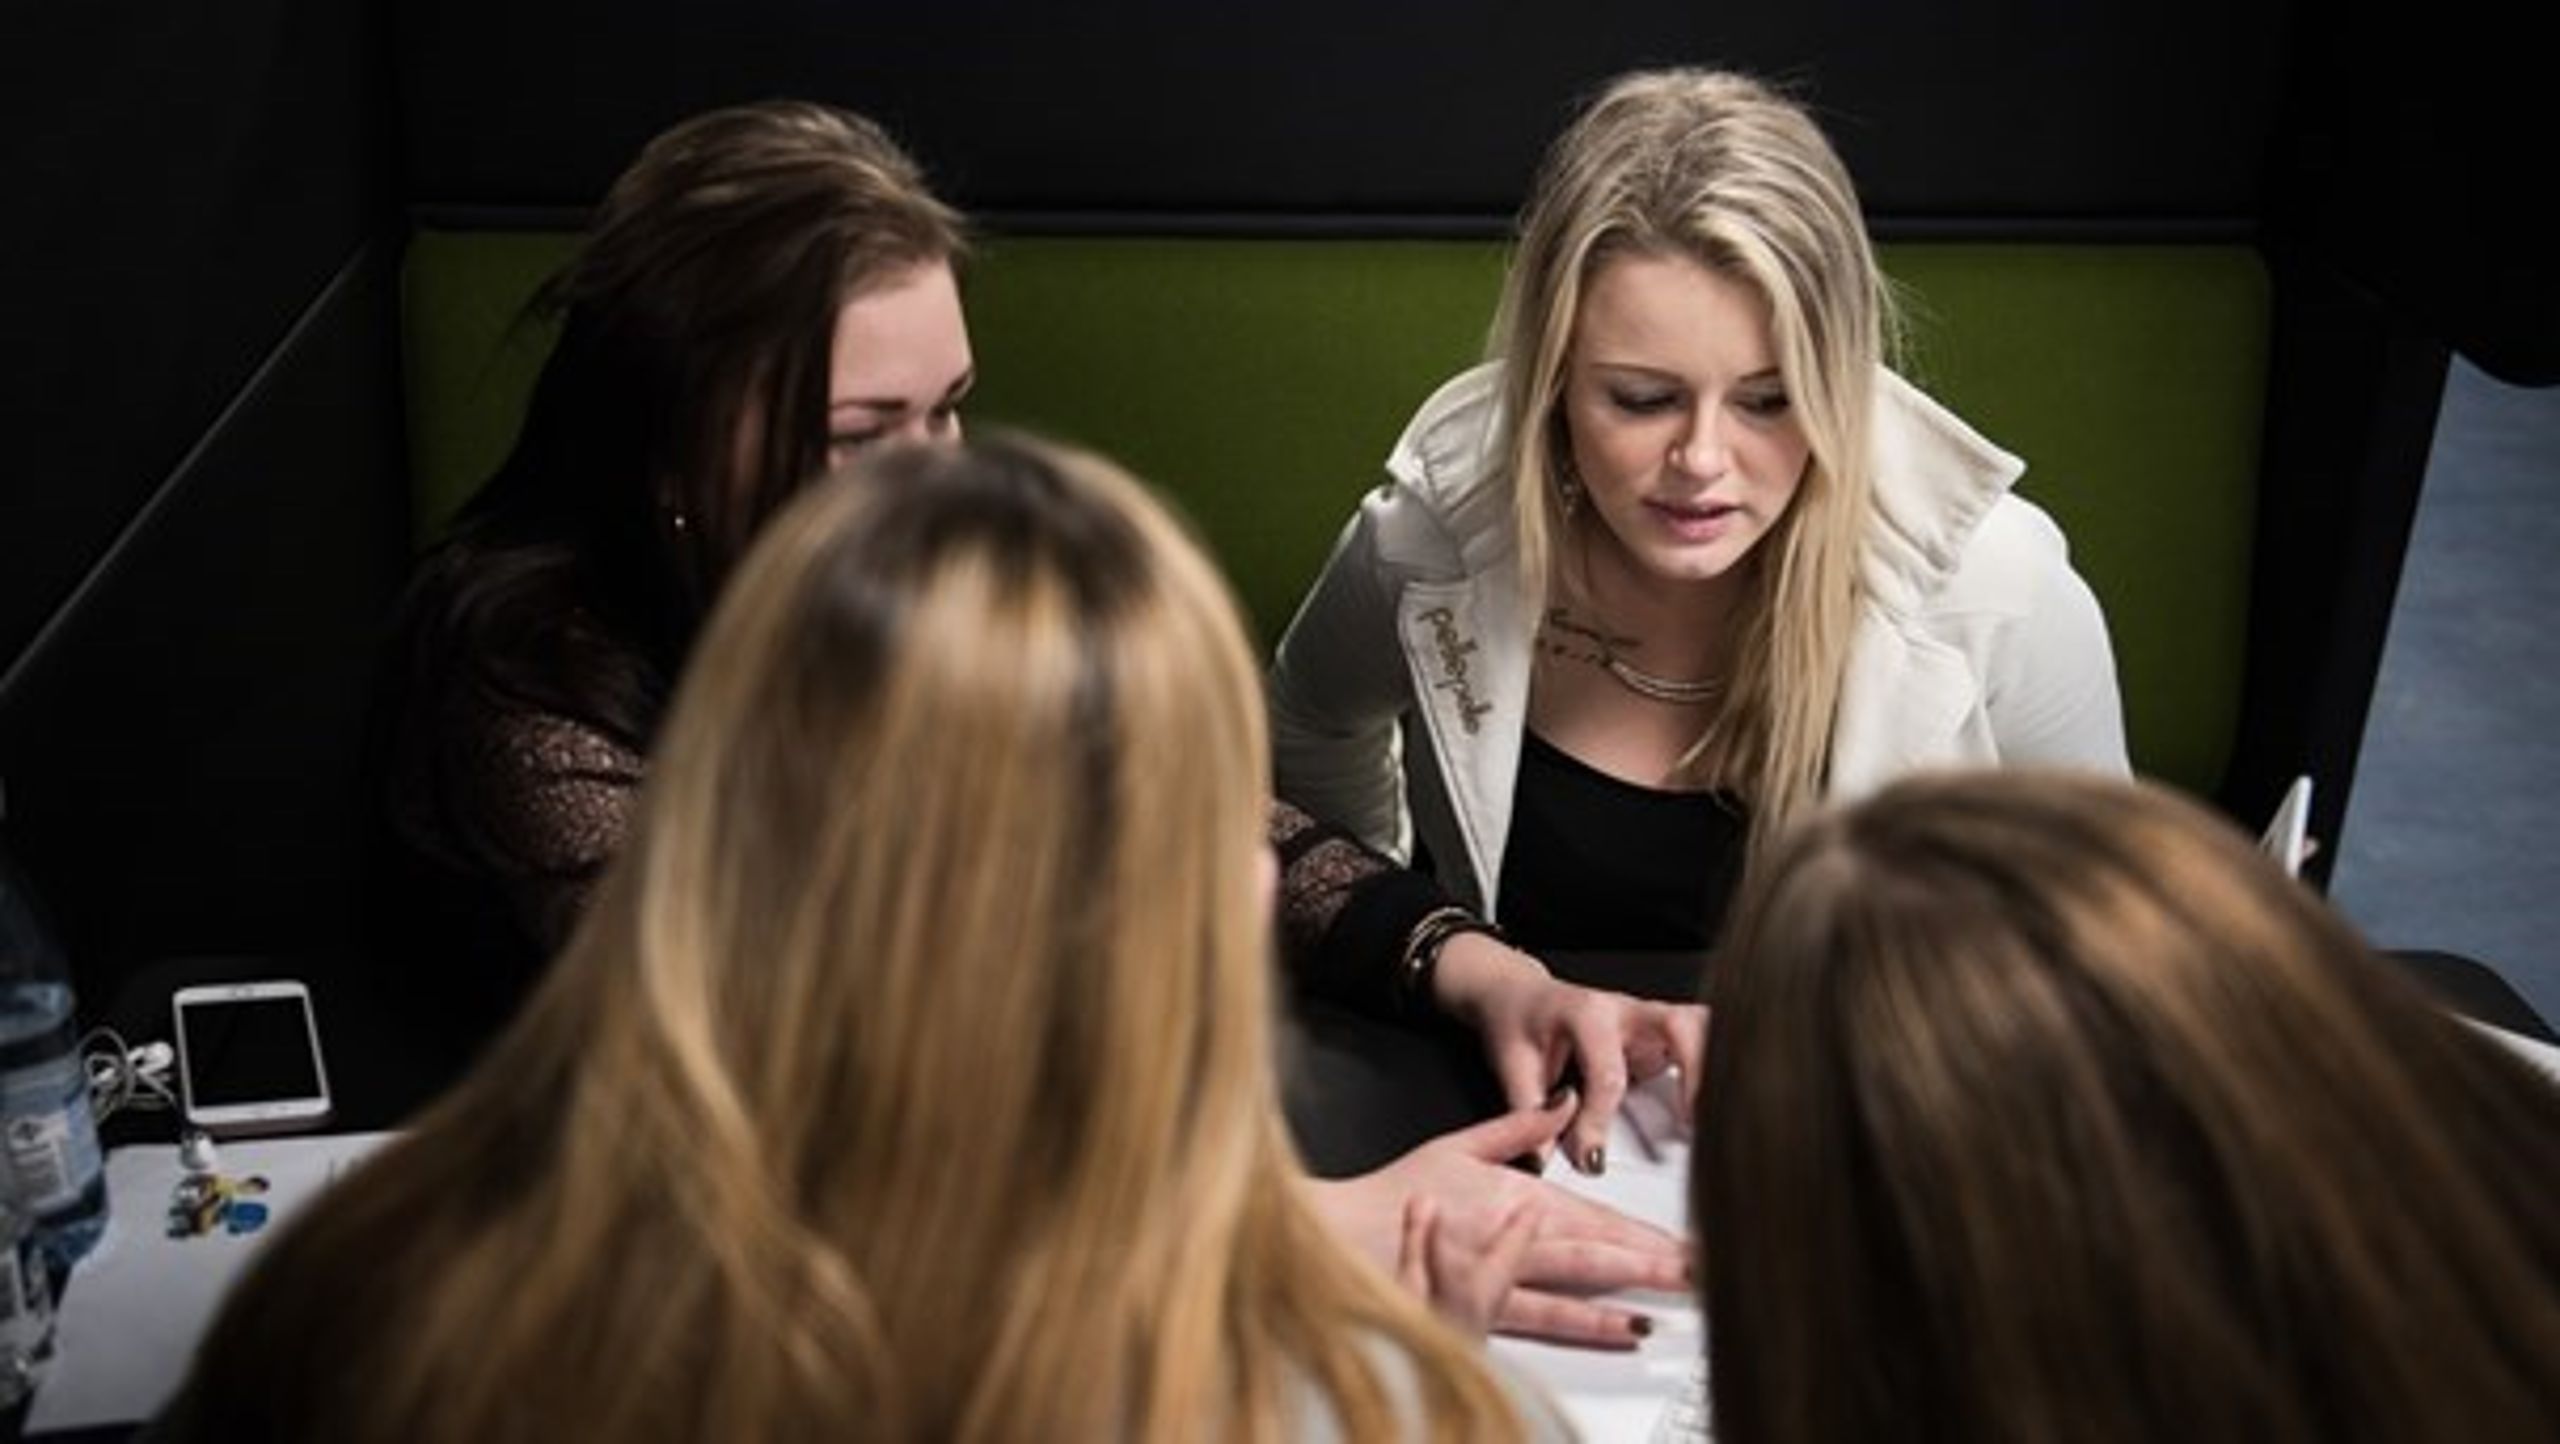 FGU’en skal give eleverne overblik over, hvilken kurs deres liv skal tage og sikre dem stabil støtte, skriver Rasmus Kjær